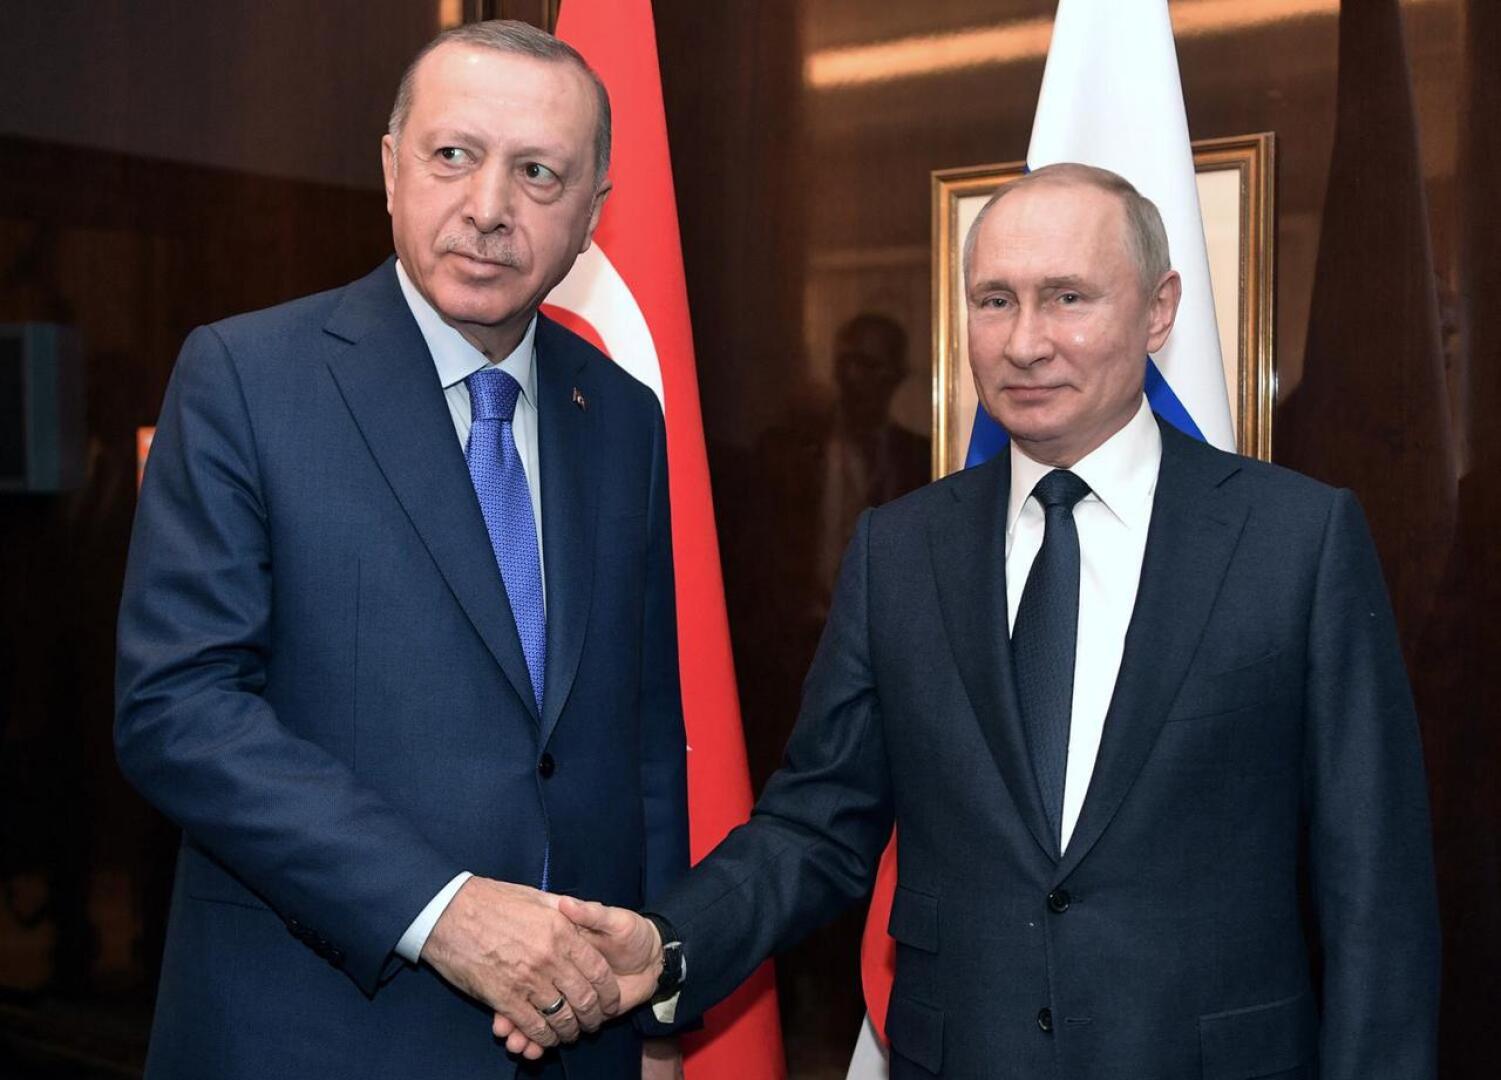 Turkin presidentti Recep Tayyip Erdogan ja Venäjän presidentti Vladimir Putin tapasivat Berliinissä sunnuntaina. Viime viikolla sotapäällikkö Khalifa Haftar lähti Moskovan neuvotteluista allekirjoittamatta aseleposopimusta.